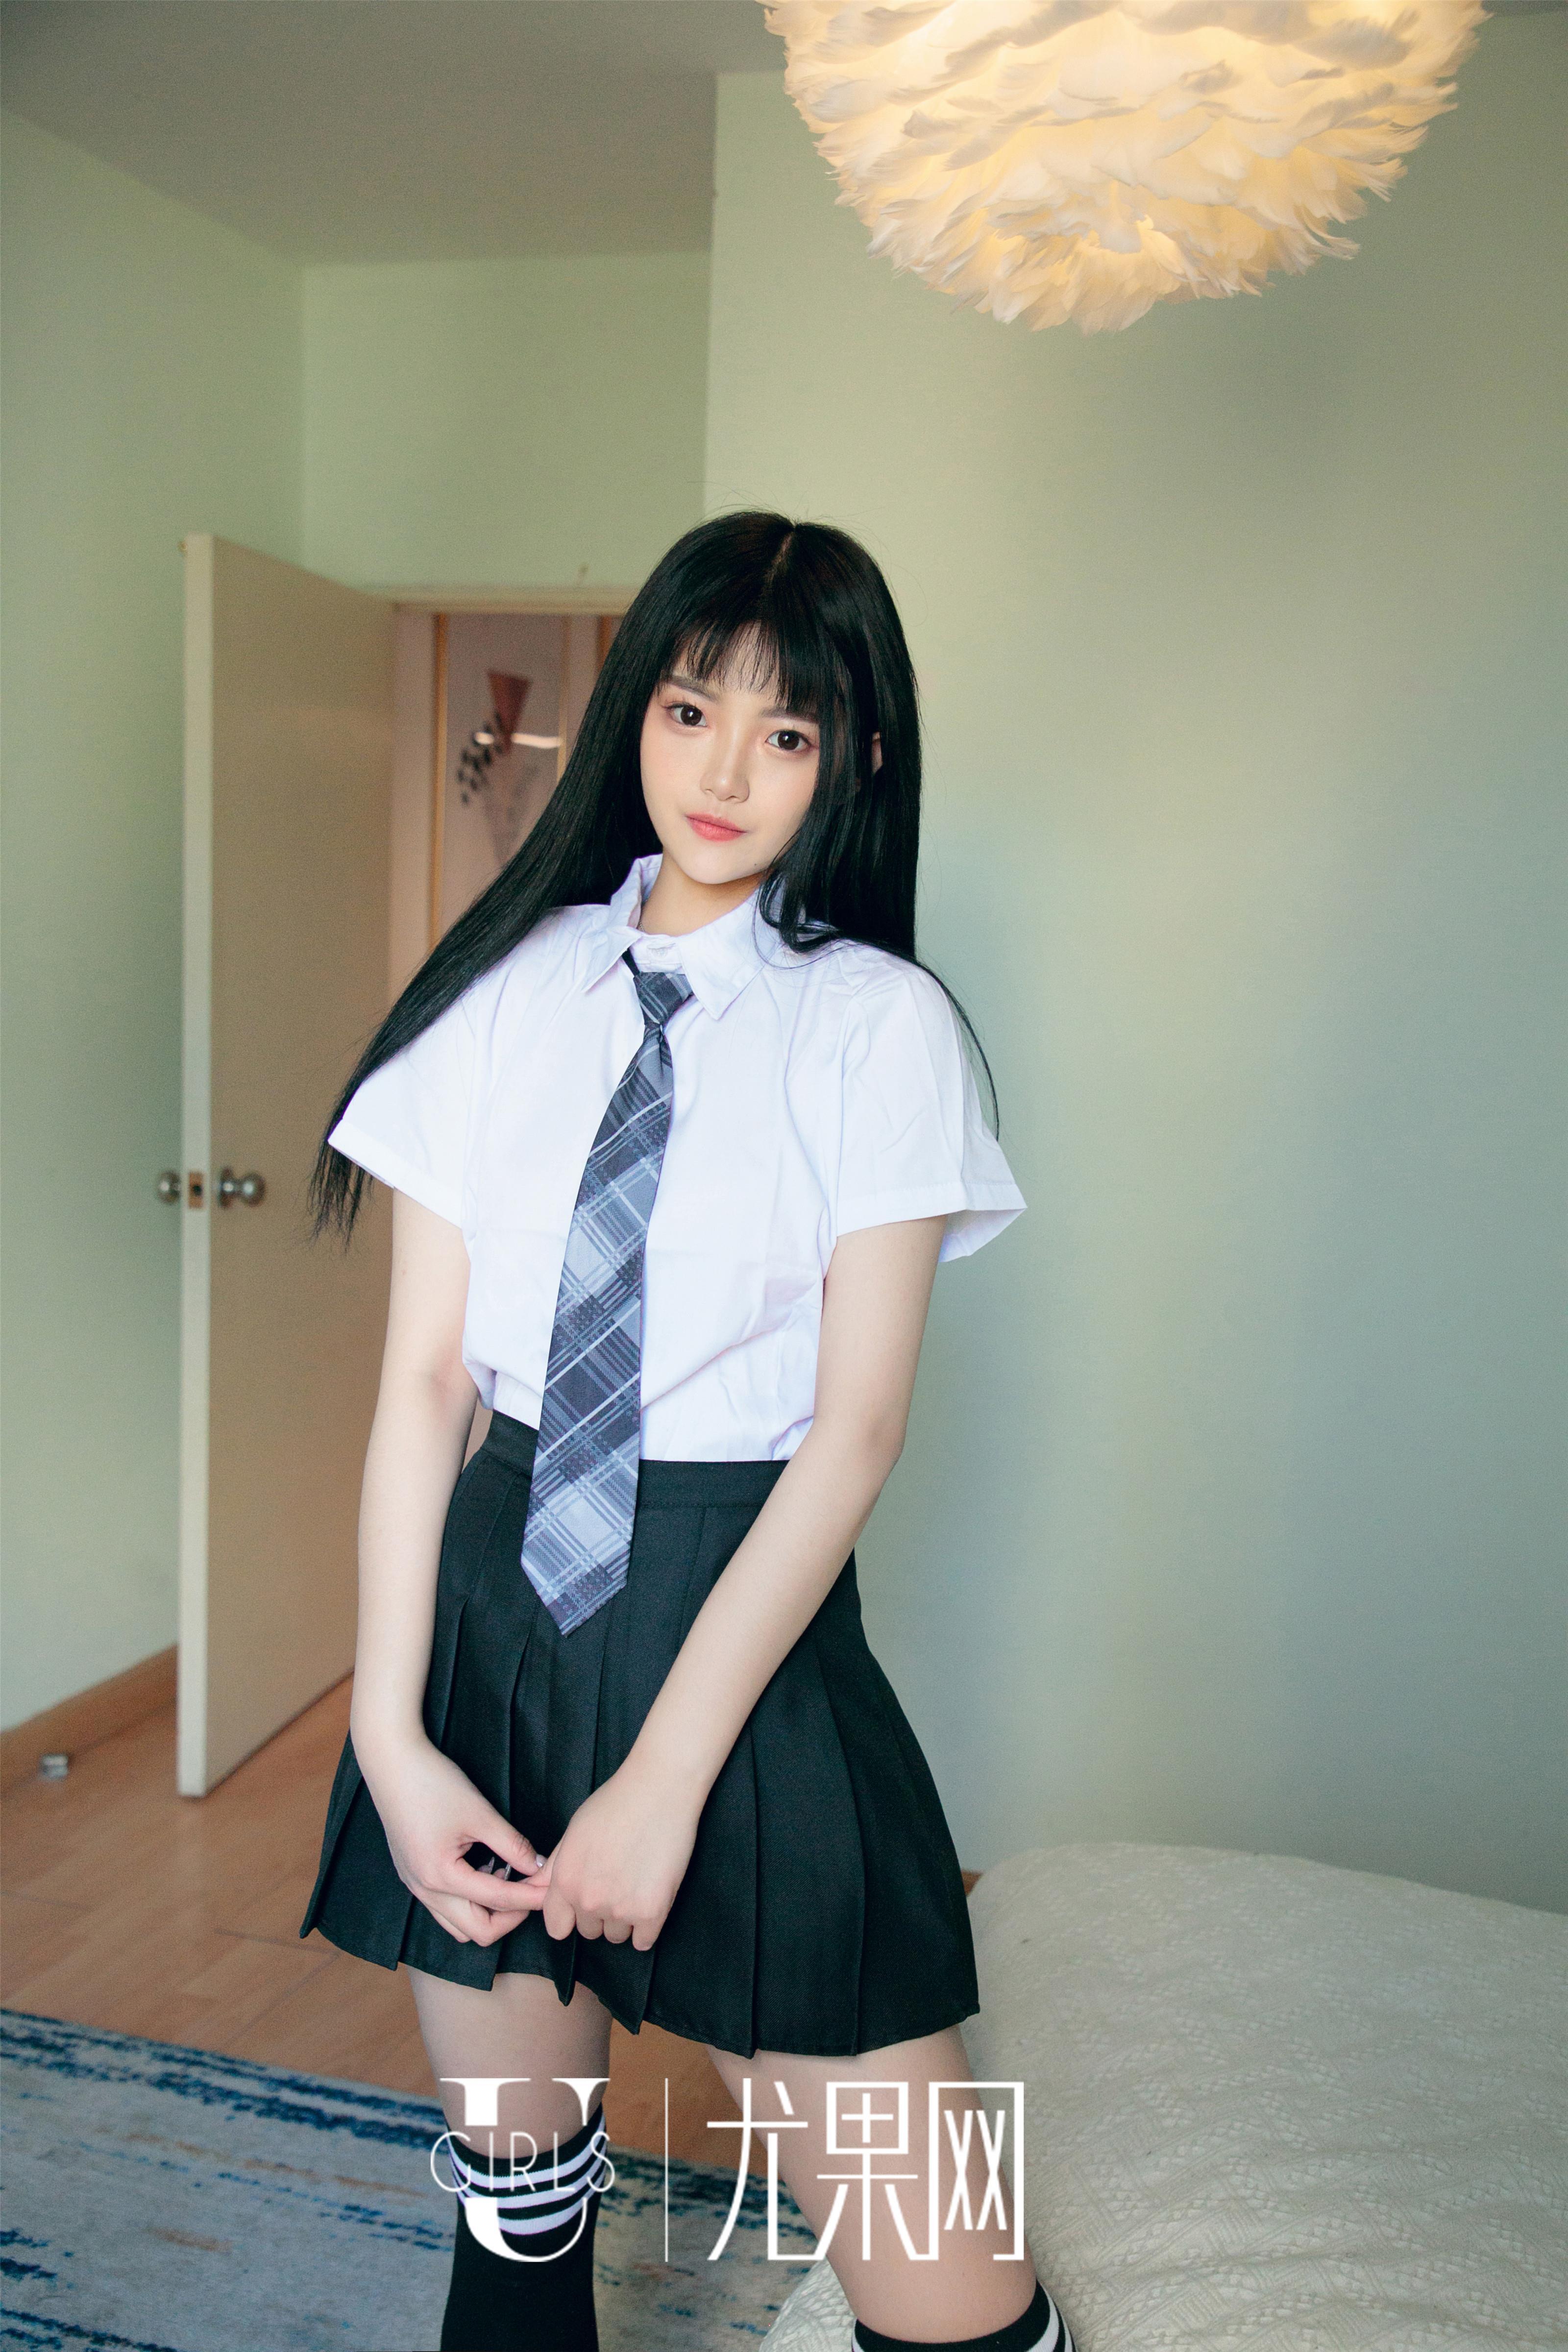 [Ugirls尤果网]U413 童颜巨乳小萝莉 桃子 高中女生制服与透视情趣内衣性感私房写真集,